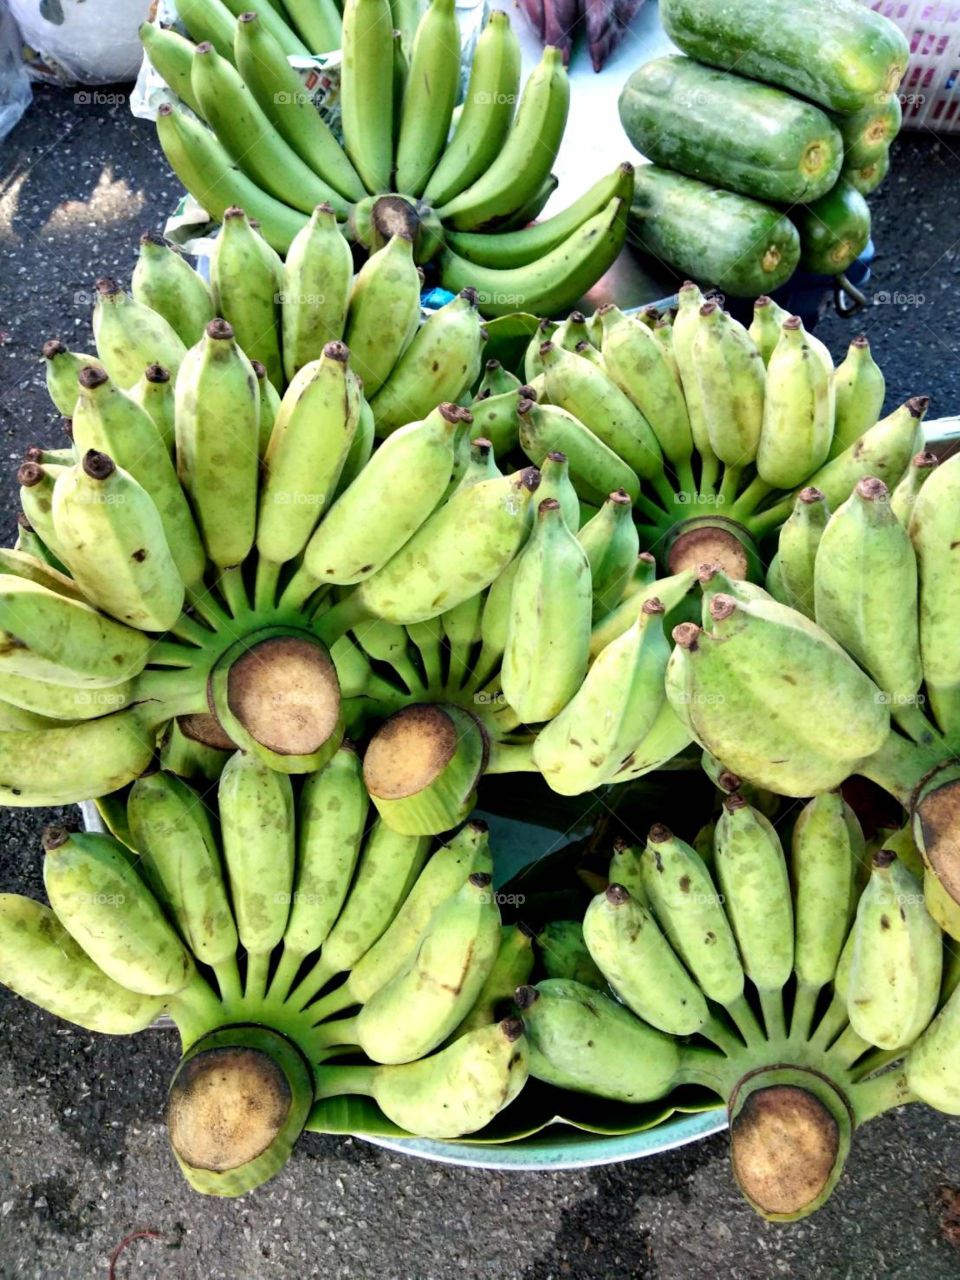 Green Banana and Green Papaya for sale.